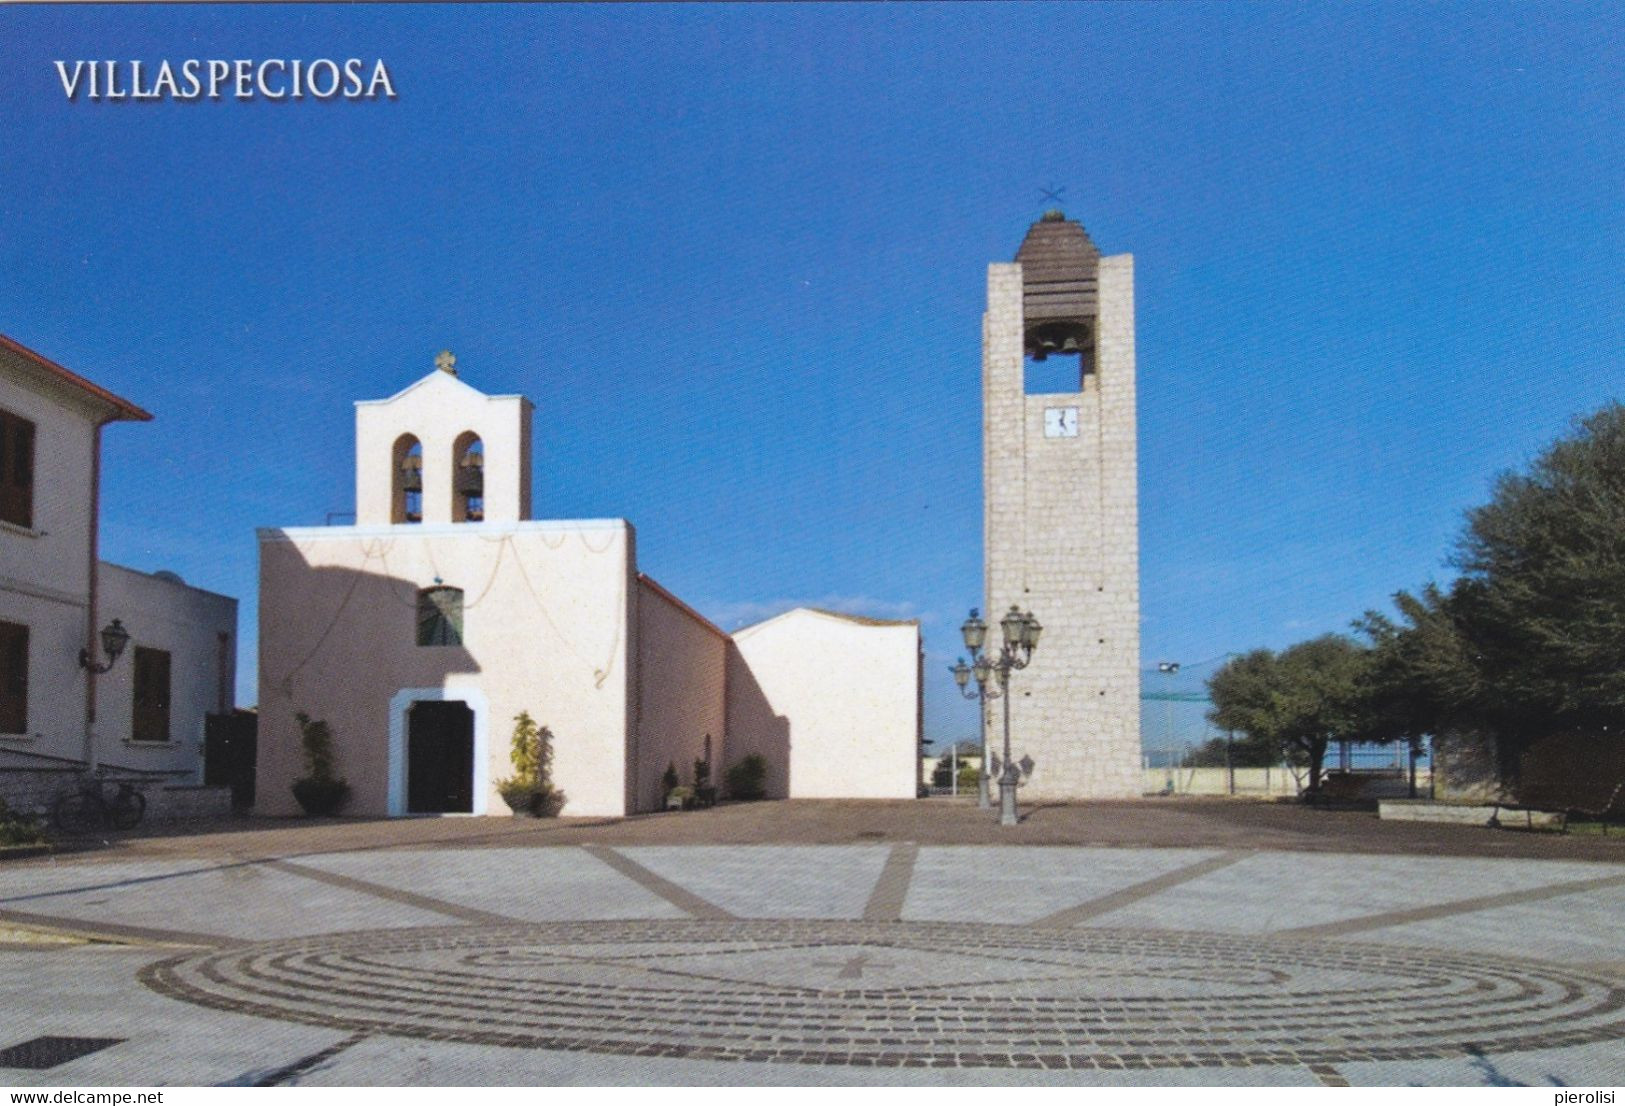 (P598) - VILLASPECIOSA (Sud Sardegna) - Chiesa Dell'Assunta - Cagliari